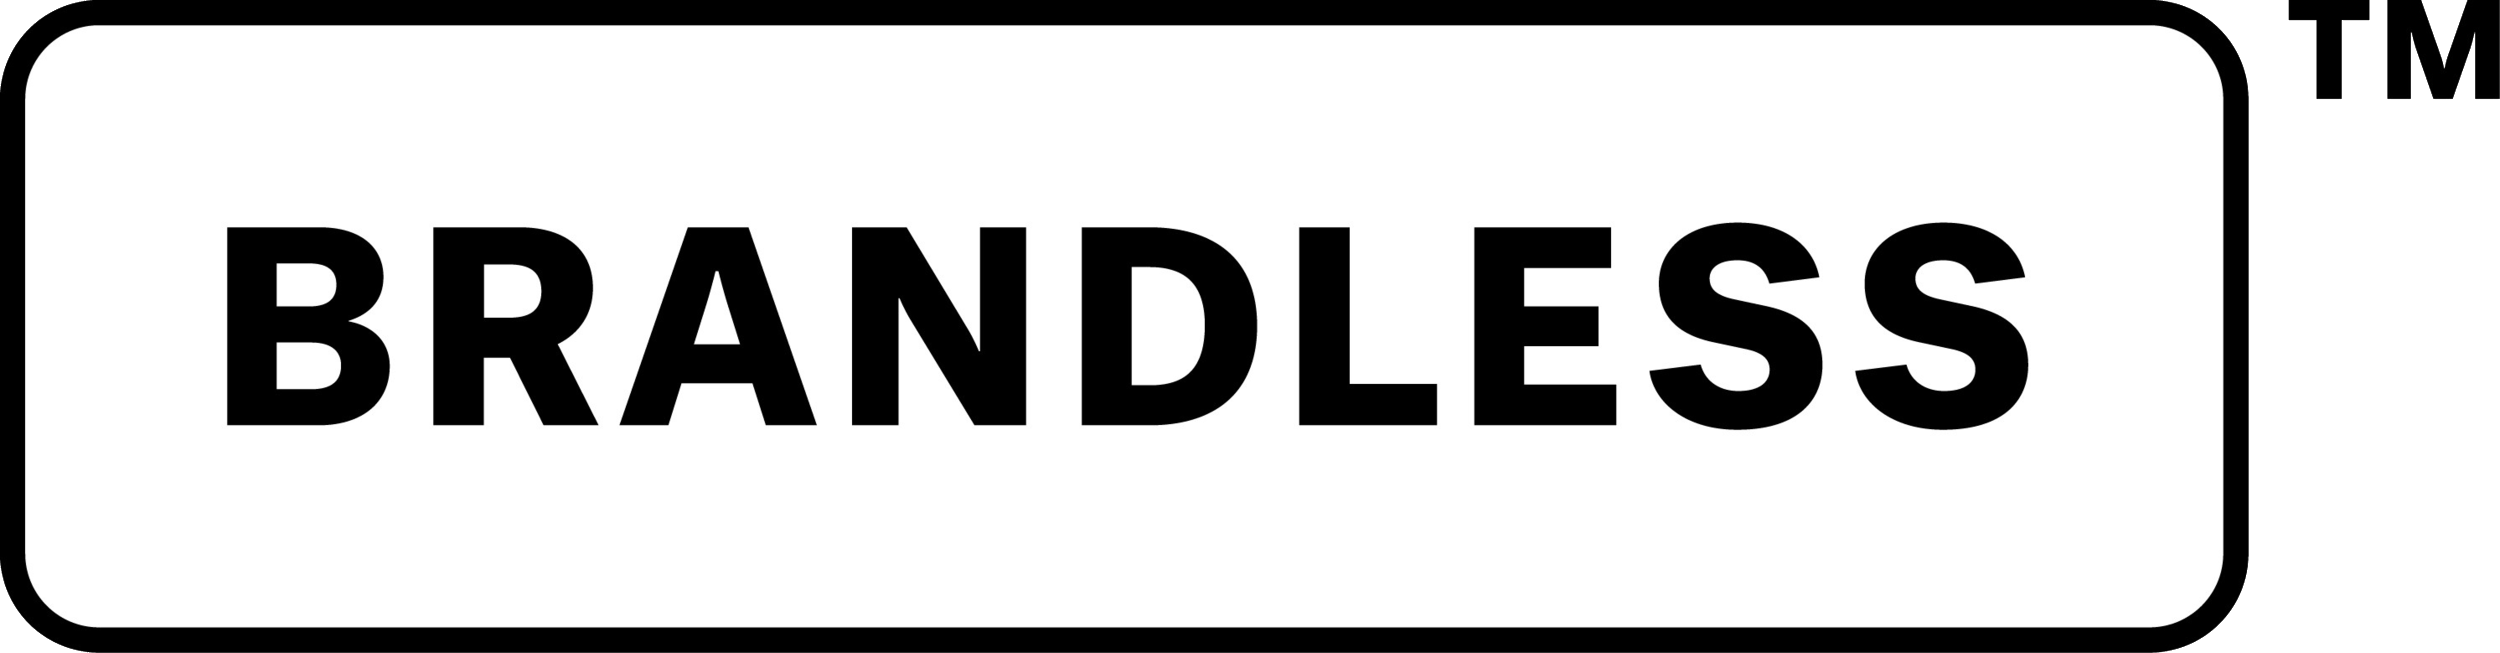 Brandless_logo.png